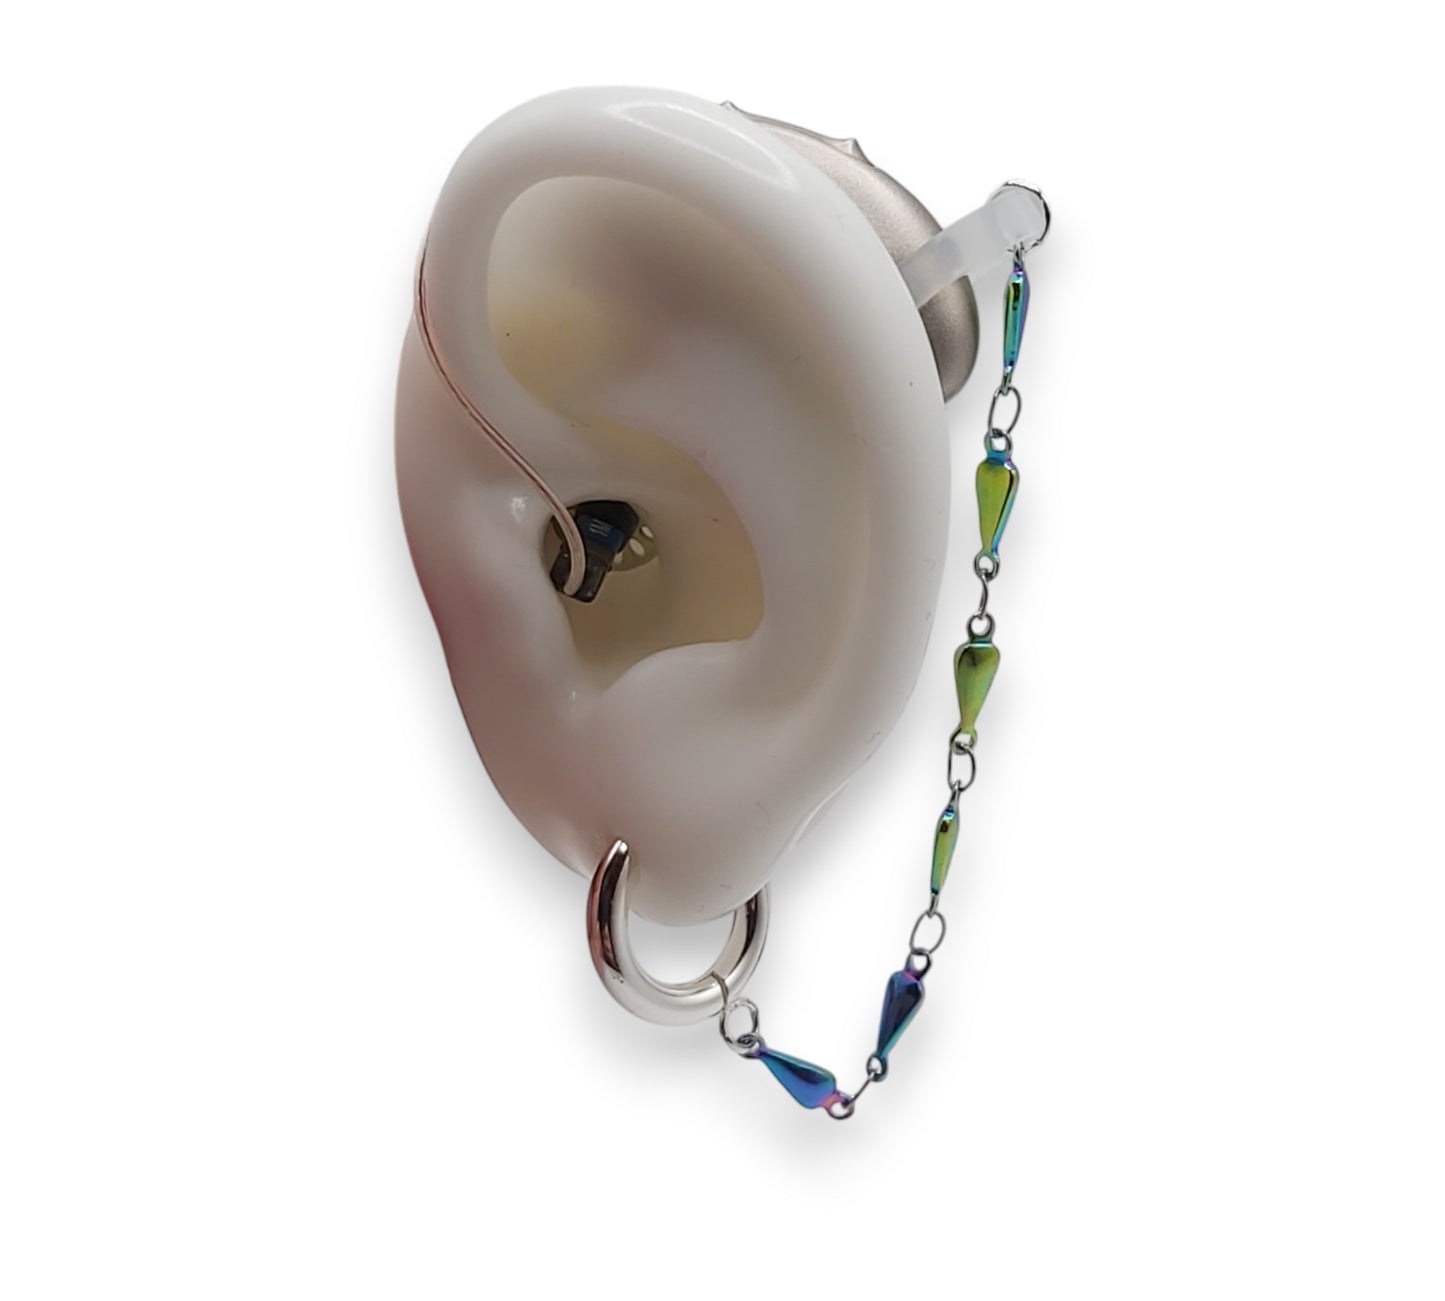 Regentropfen-Kettenohrringe für Hörgeräte